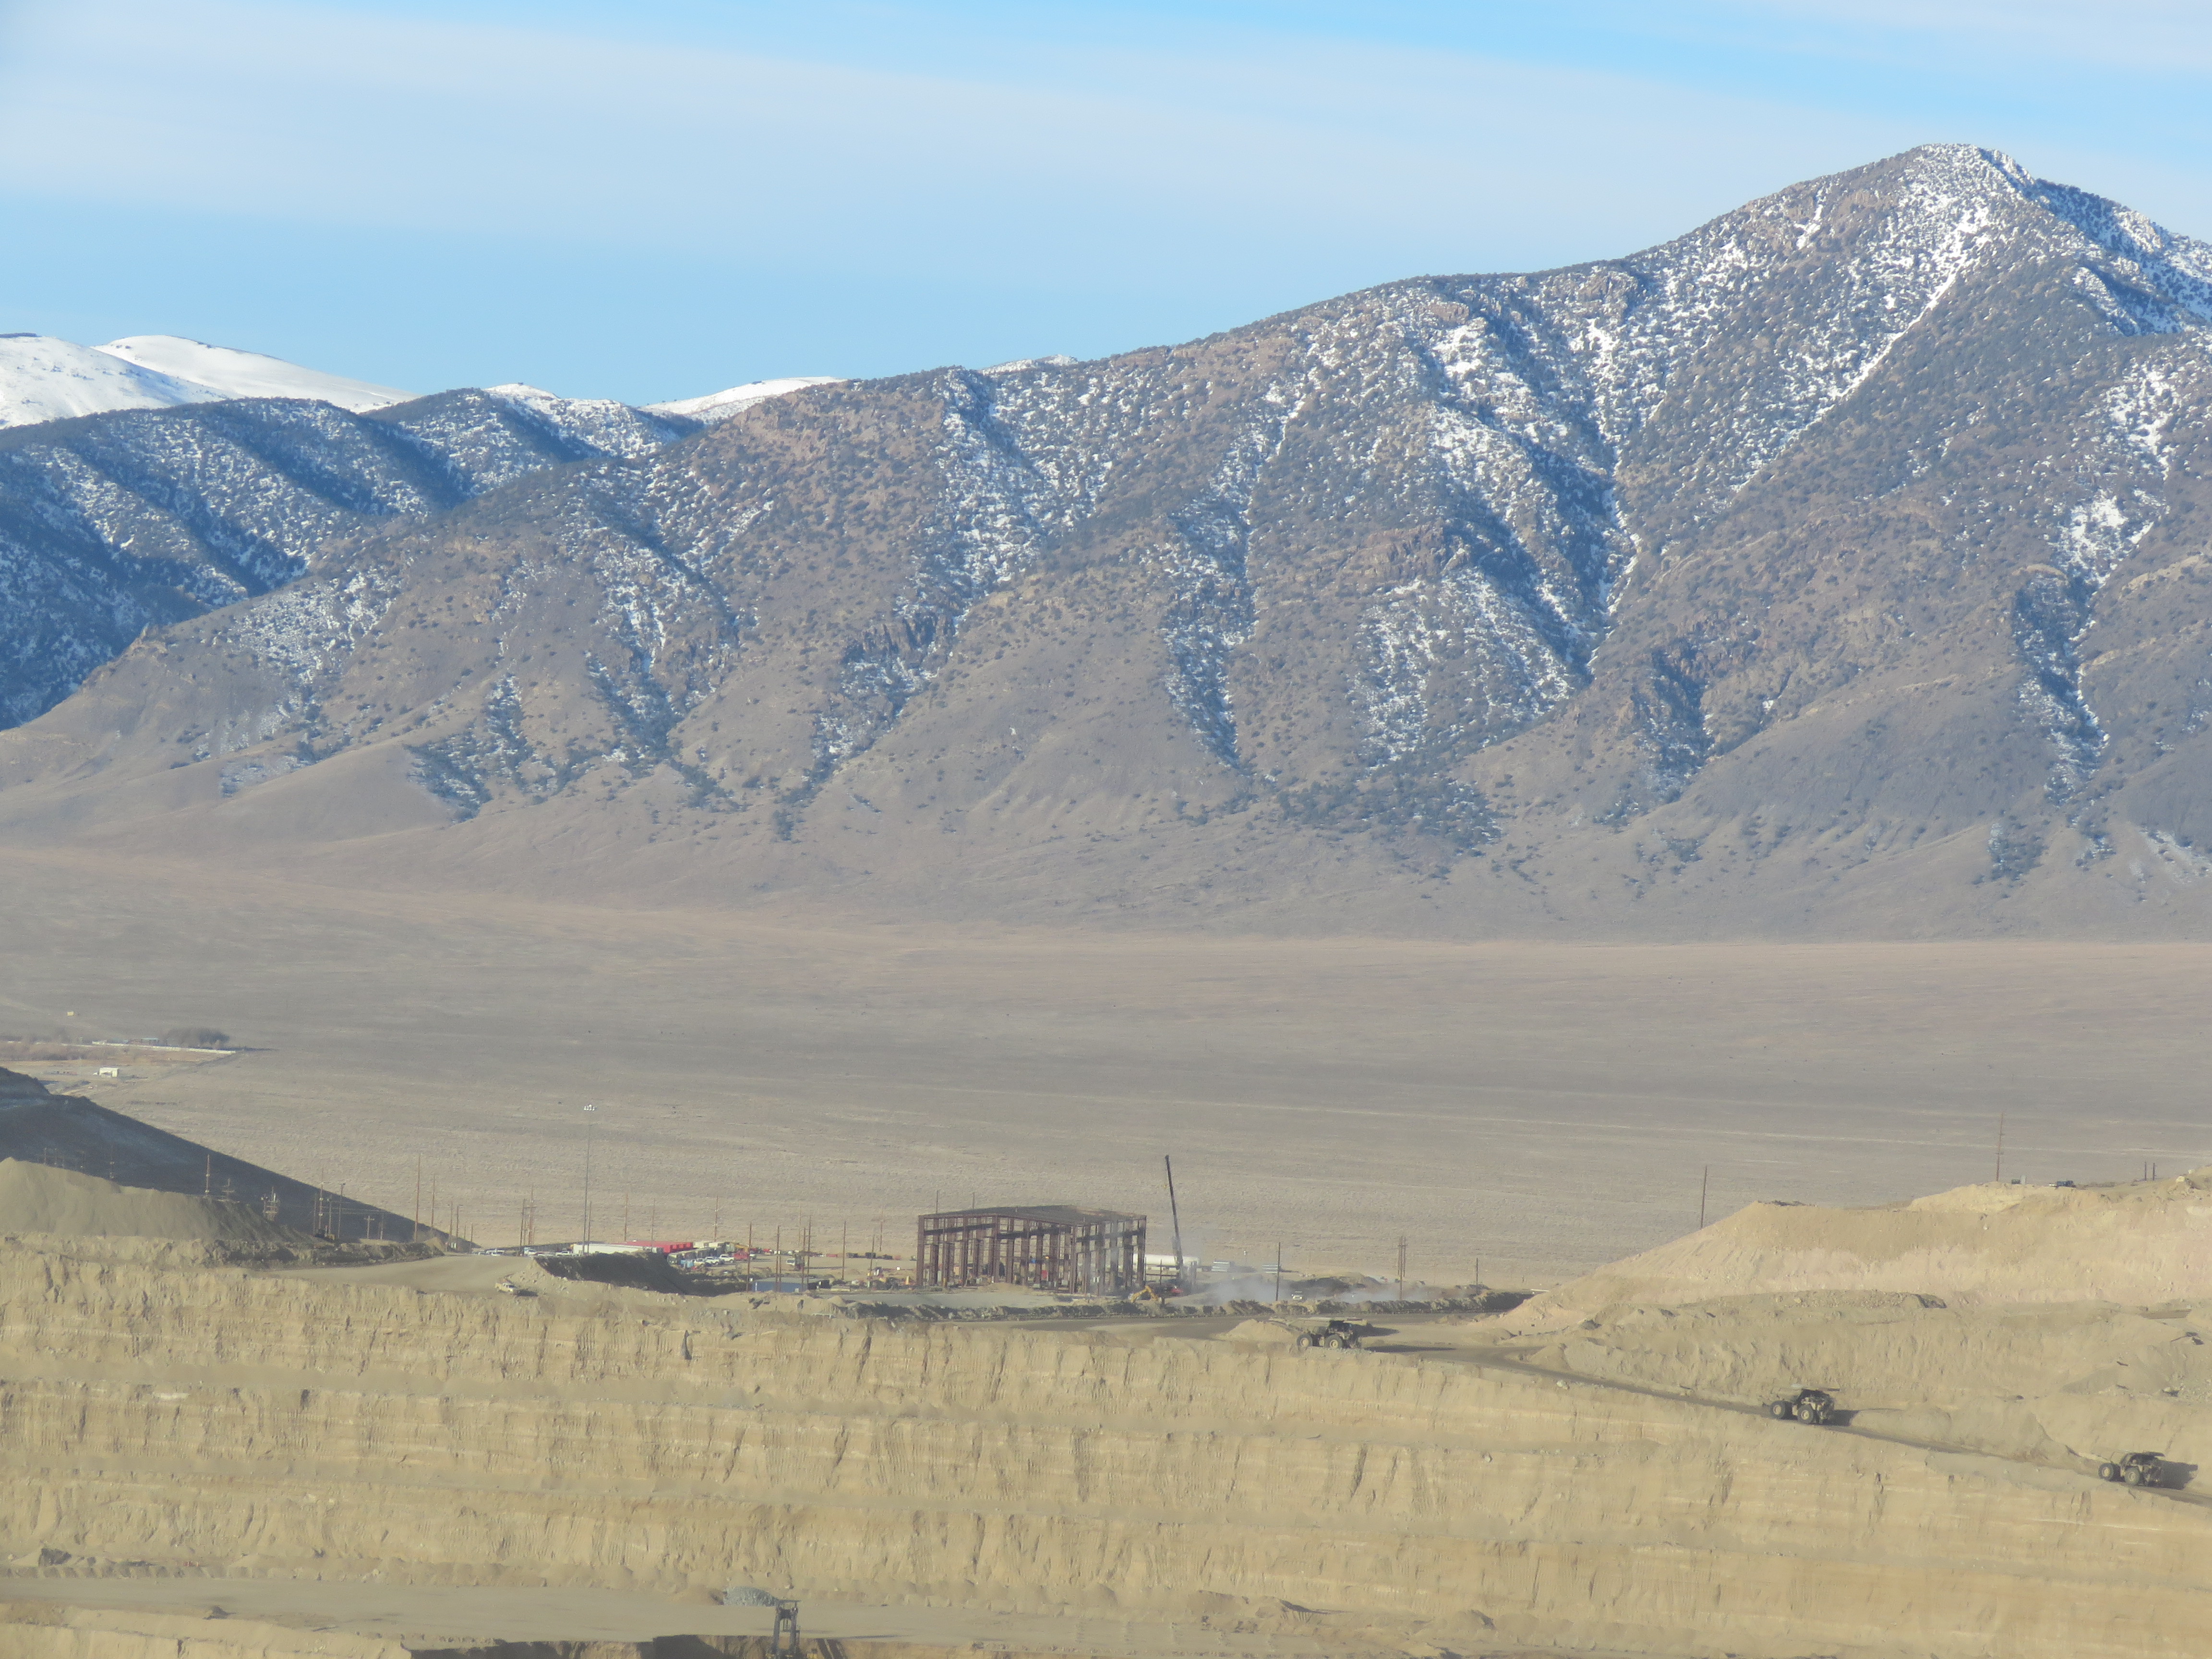 Una operación a cielo abierto de gran tonelaje, Round Mountain es conocida por sus altos rendimientos de oro, así como por sus programas ambientales y de seguridad. La mina es un fuerte partidario de las iniciativas de la comunidad local y sirve como el mayor empleador privado en el condado de Nye, Nevada.